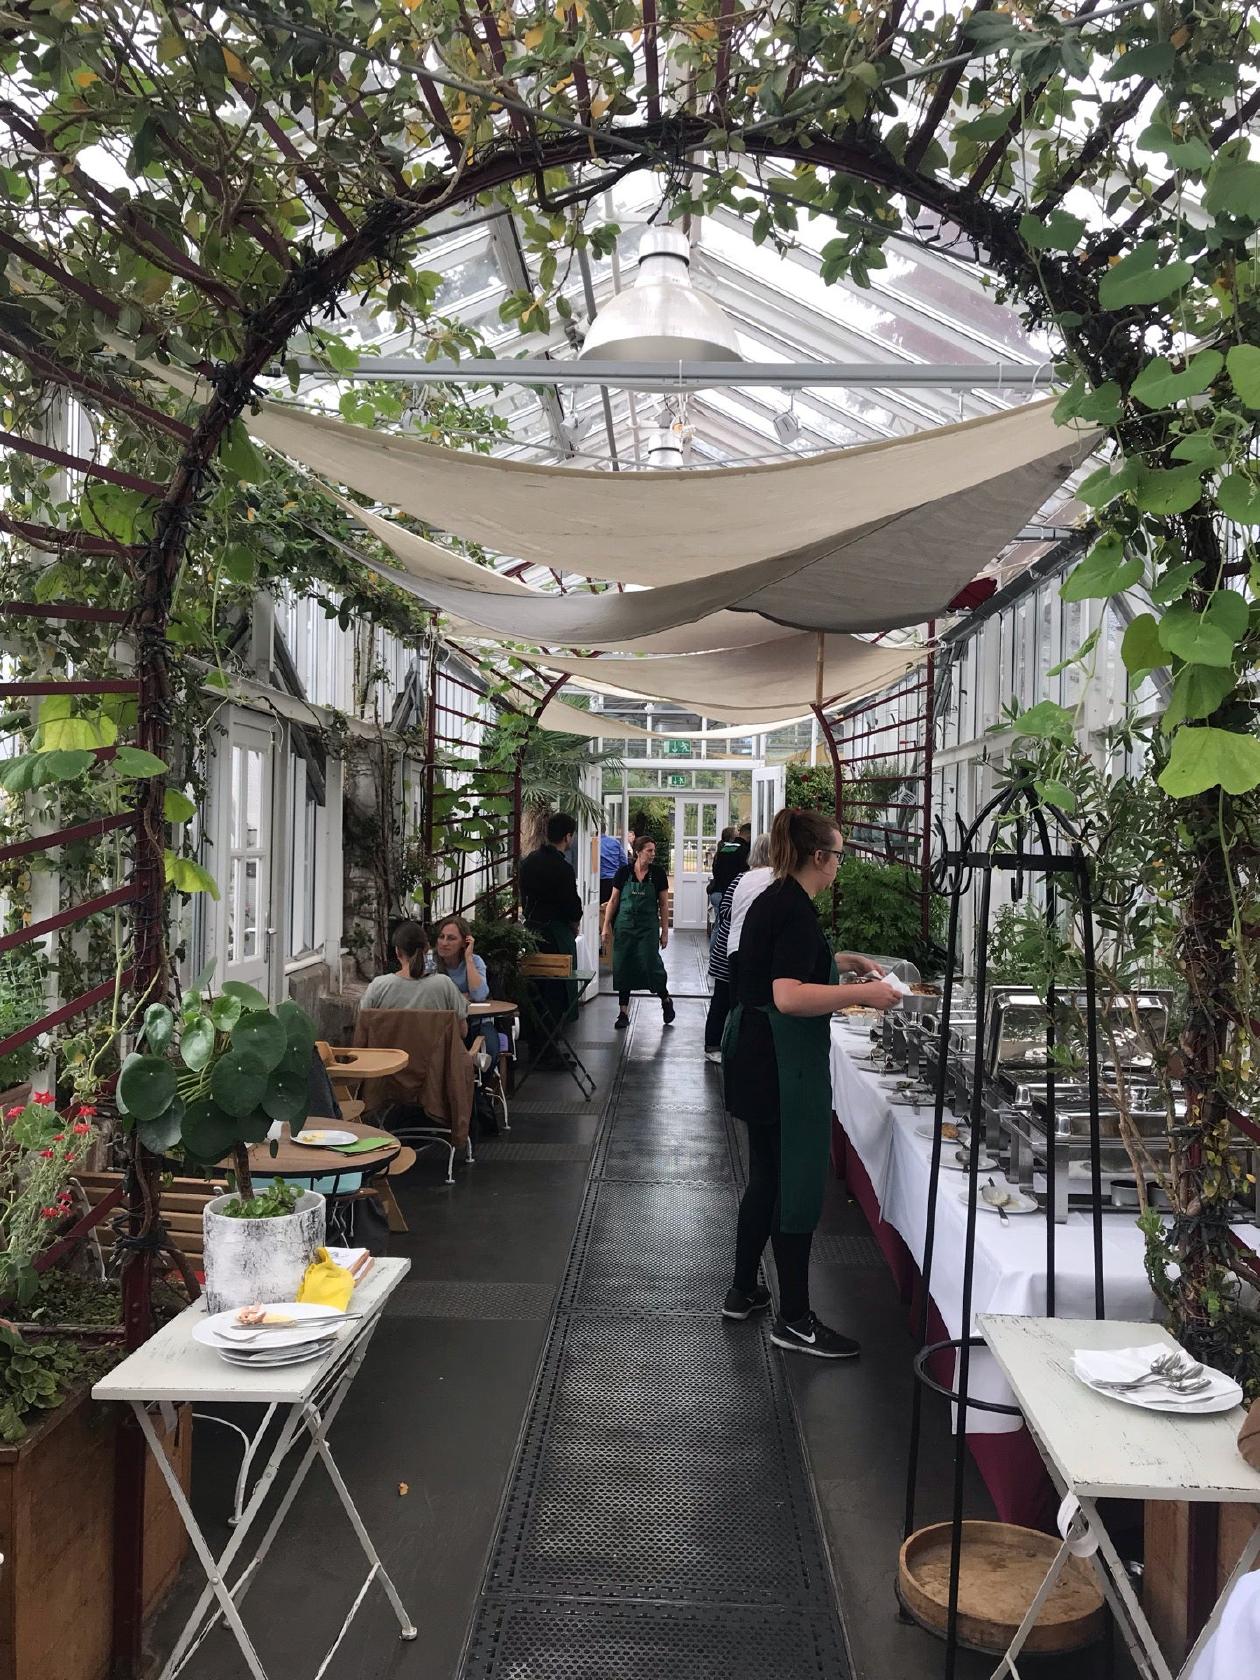 Gartenakademie cafe königliche berlin home